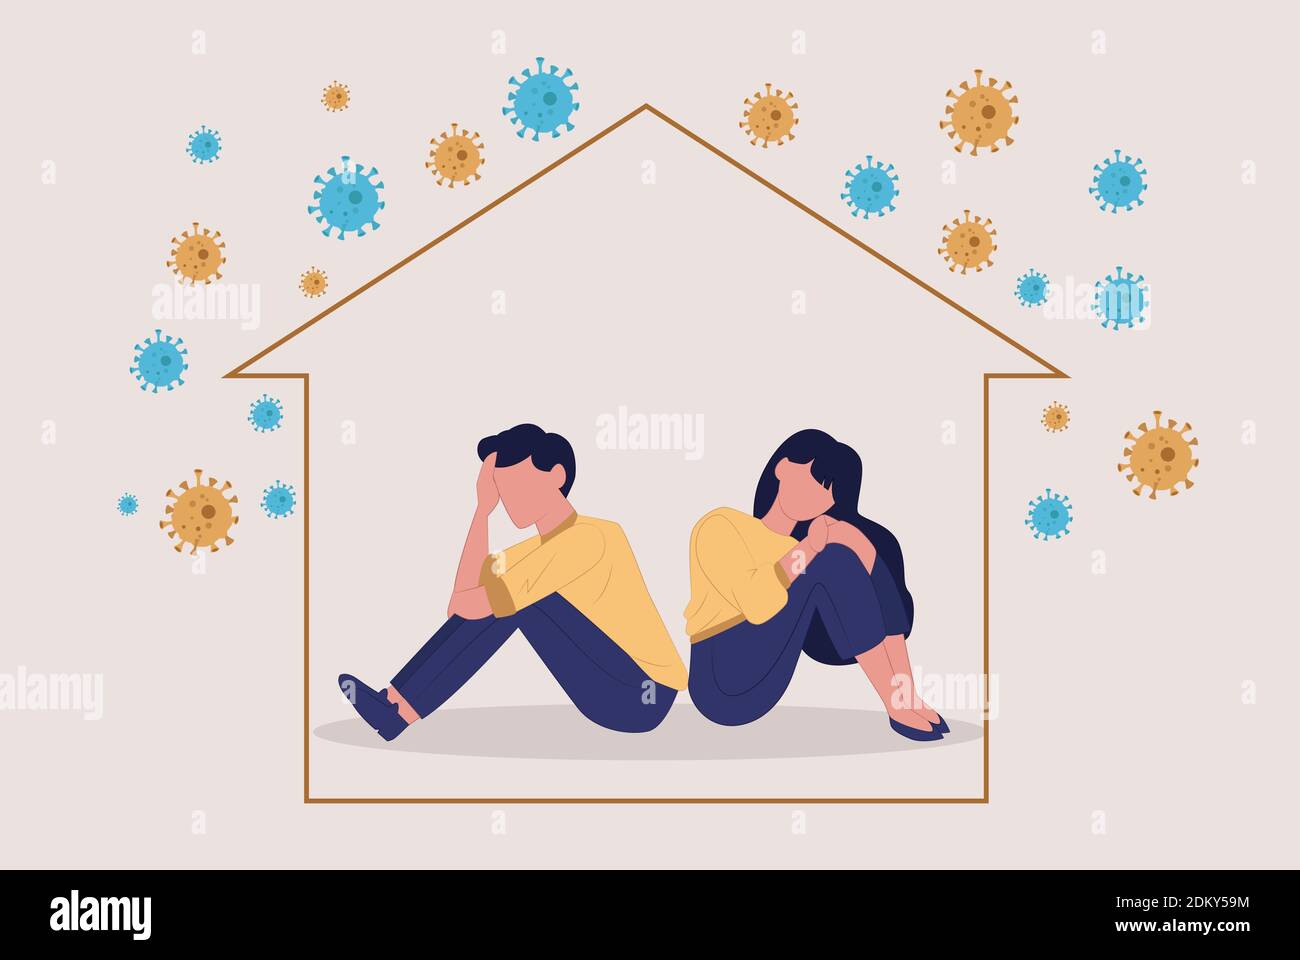 Vecteur d'un triste malheureux malheureux déprimé couple homme et femme Assis de dos à dos à l'intérieur d'une maison pendant la pandémie de COVID-19 Illustration de Vecteur